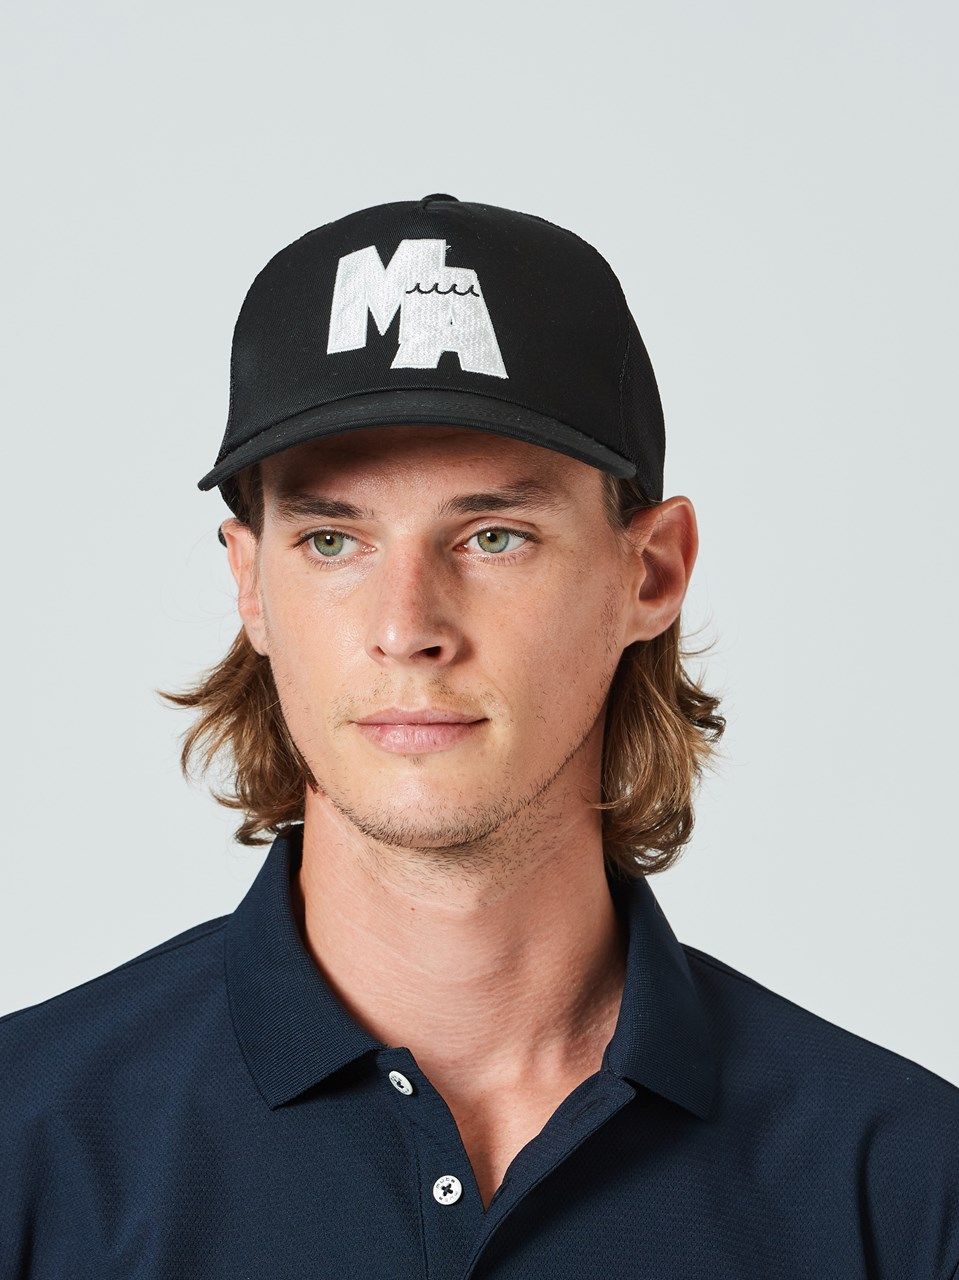 最安値100%新品MUTA marine ムータマリン5キャップ白/8キャップ帽子 男女兼用 帽子